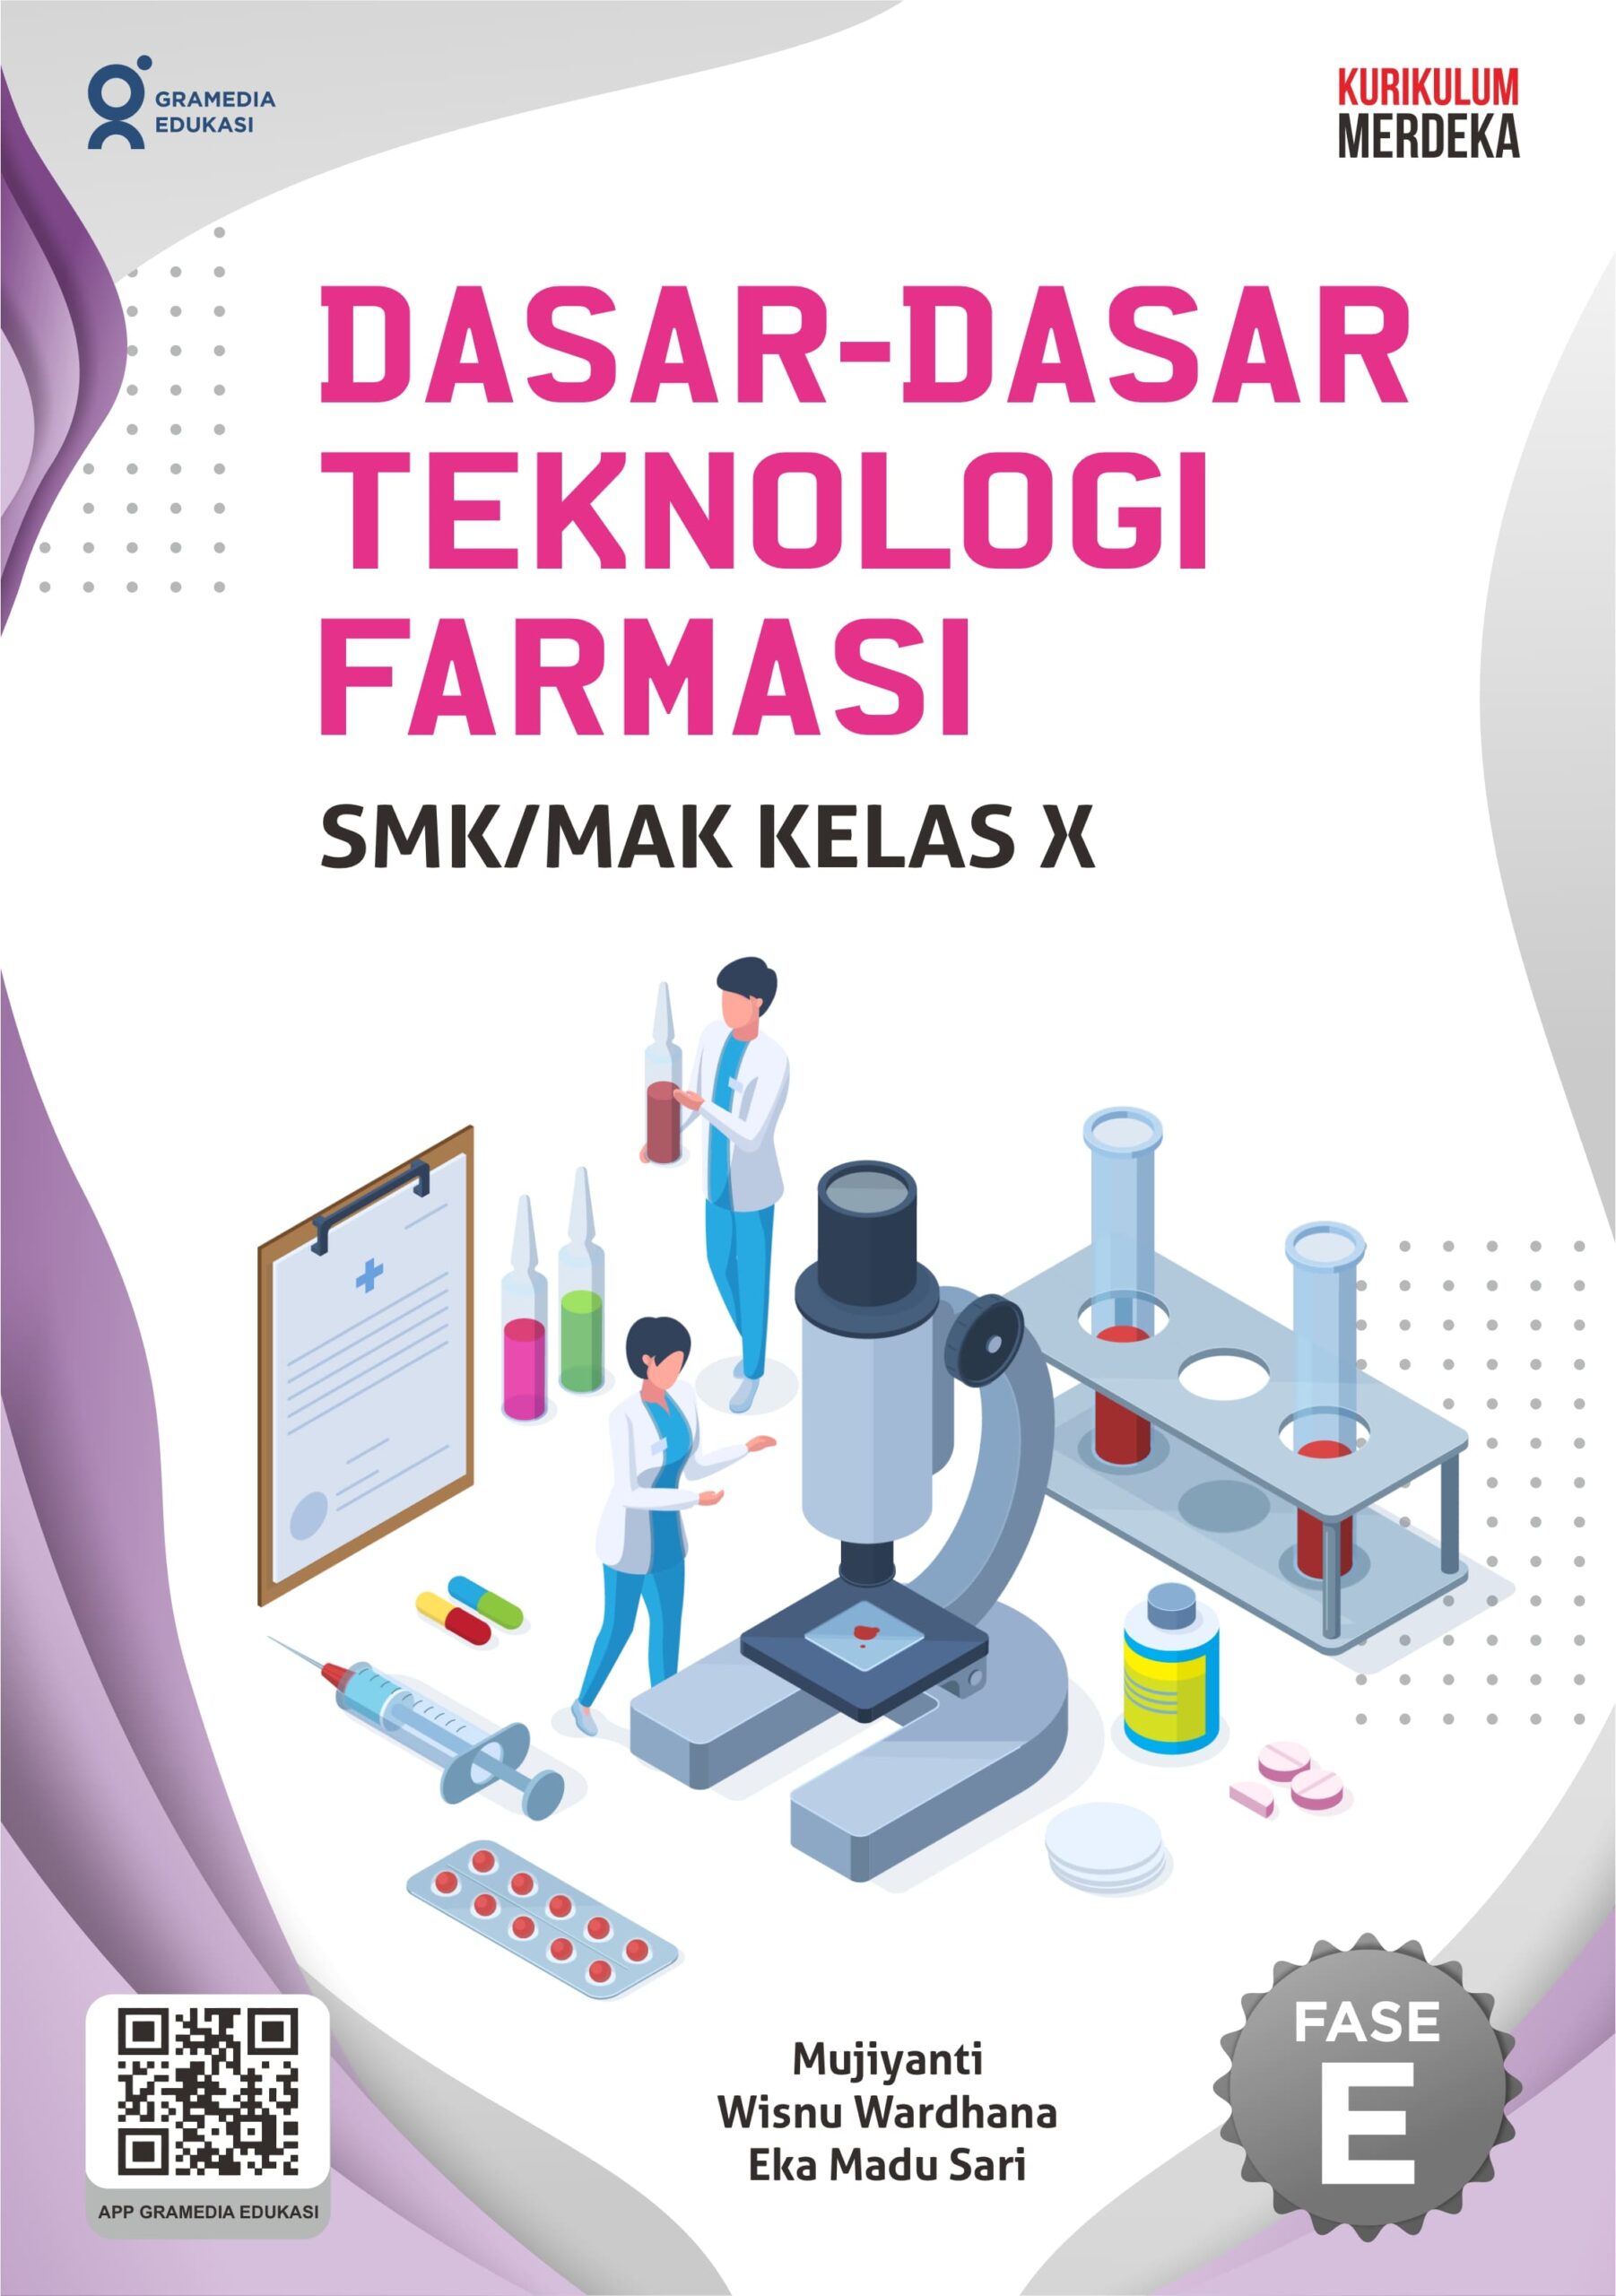 Dasar-dasar teknologi farmasi untuk SMK/MAK kelas X